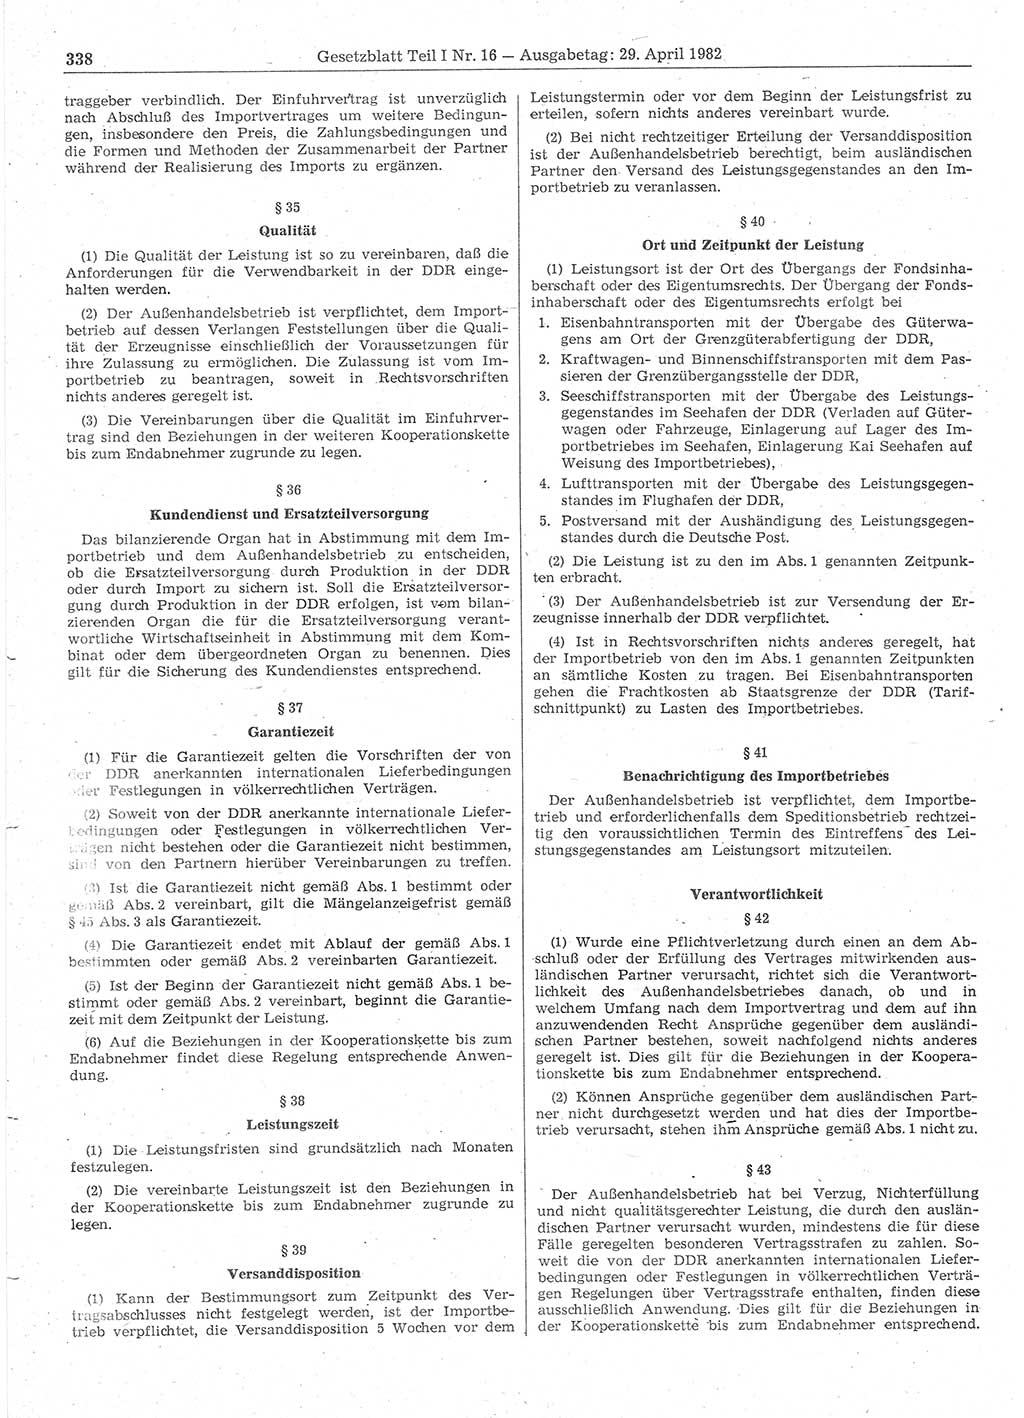 Gesetzblatt (GBl.) der Deutschen Demokratischen Republik (DDR) Teil Ⅰ 1982, Seite 338 (GBl. DDR Ⅰ 1982, S. 338)